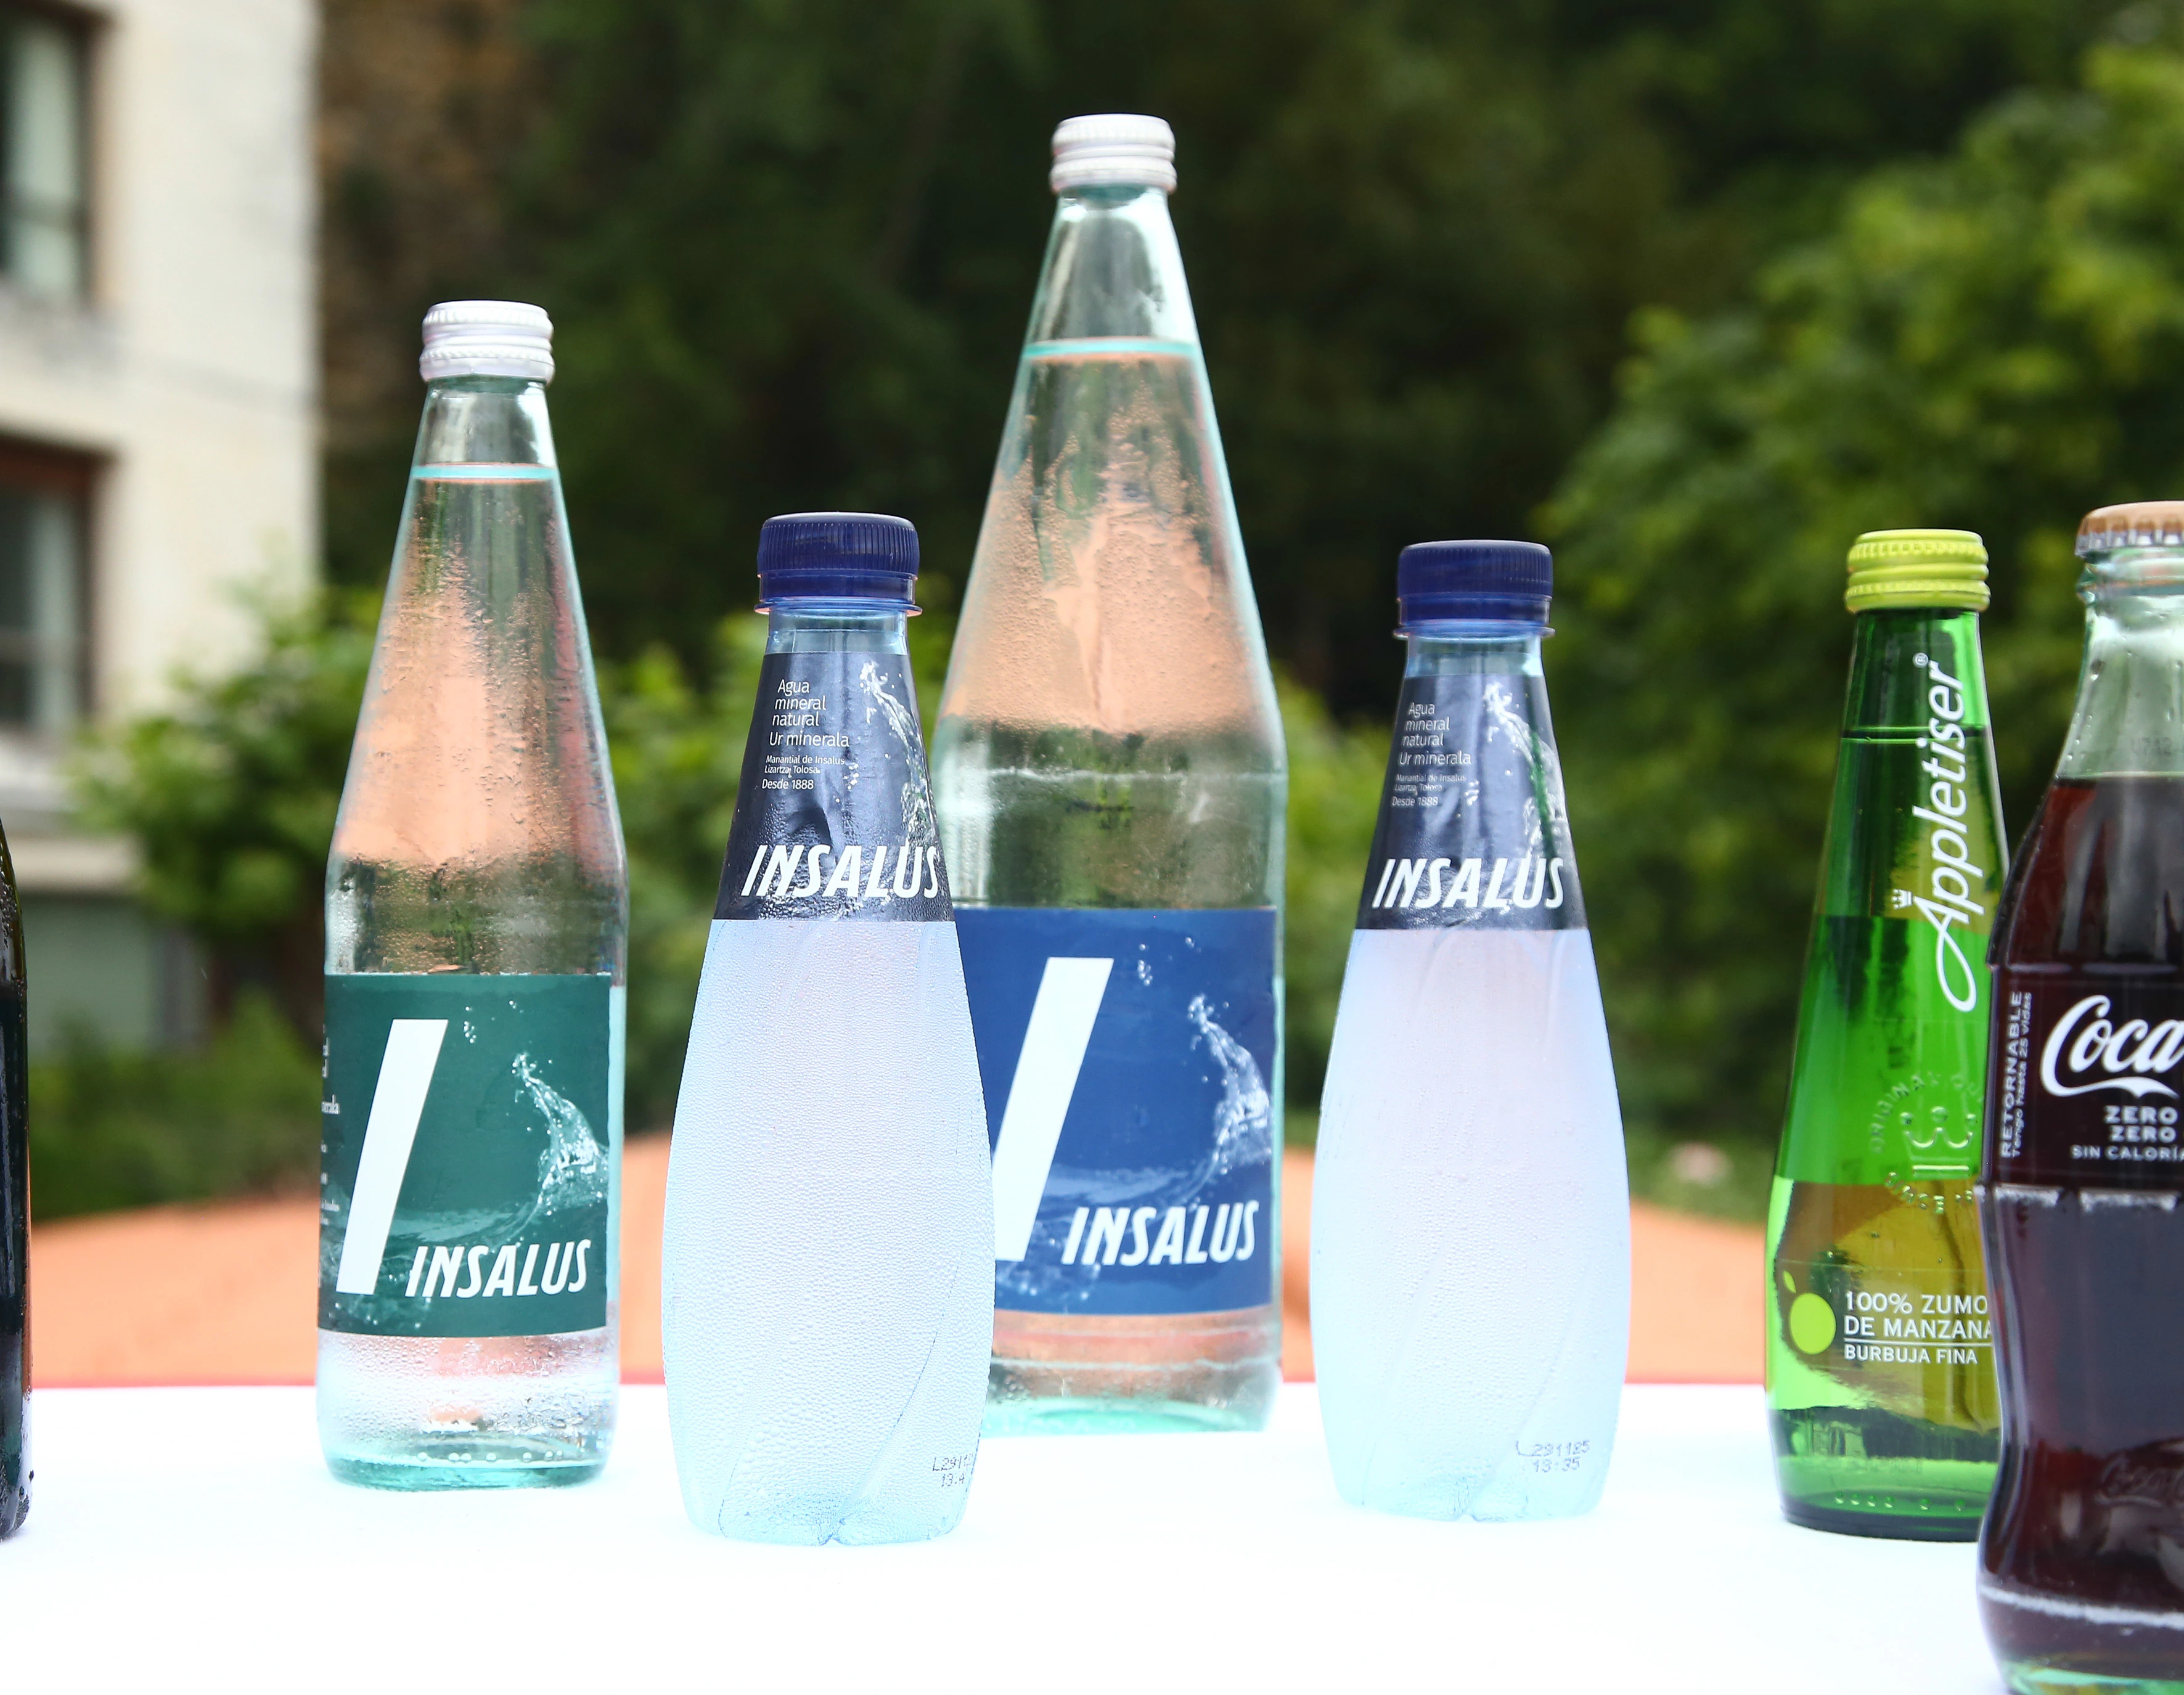 Botellas Agua Mineral - 15 x 1 L, Agua de Insalus, Correos Market